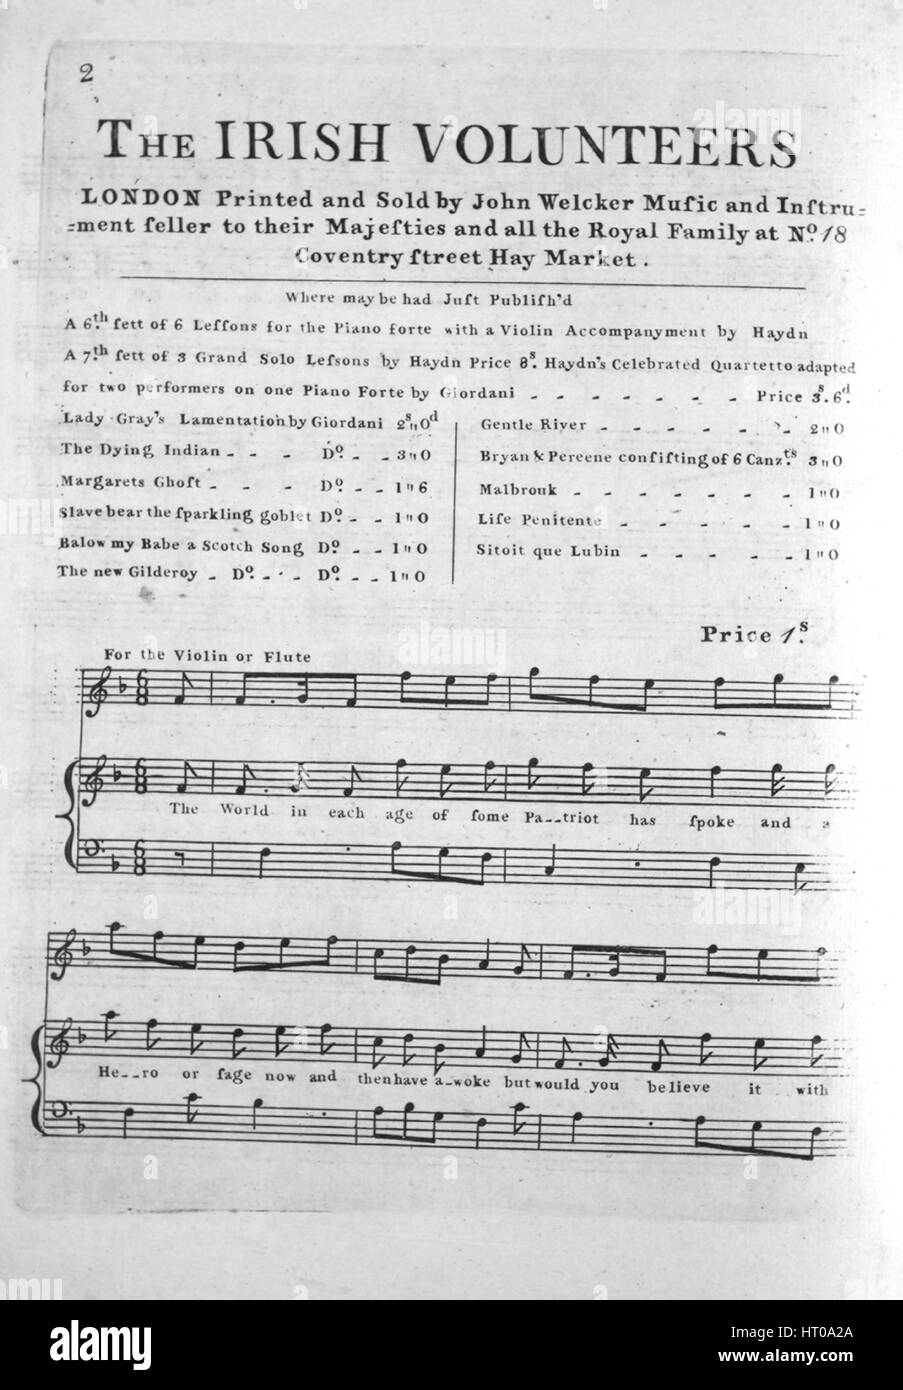 Imagen de cubierta de partituras de la canción "voluntarios irlandeses",  con notas de autoría original leyendo 'na', Reino Unido, 1900. El editor  está clasificada como 'John Welcker música y vendedor de instrumentos